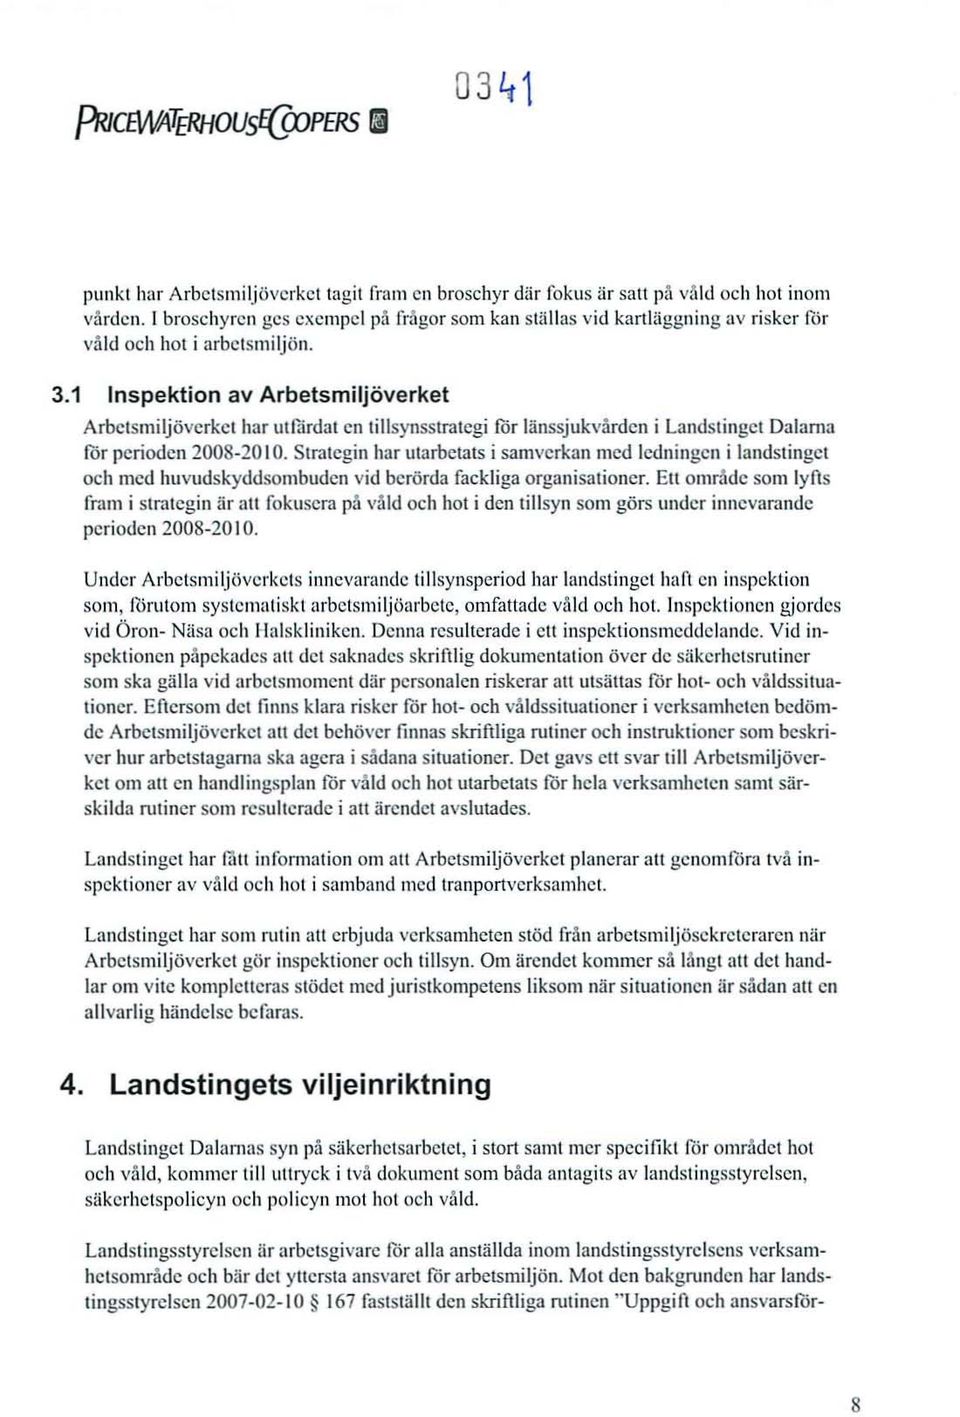 1 Inspektion av Arbetsmiljöverket Arbetsmilj överket hm utfä rdat en tillsyn sstrategi för länssju kvård en i Landstinget Dala rna för perioden 2008-20 10.